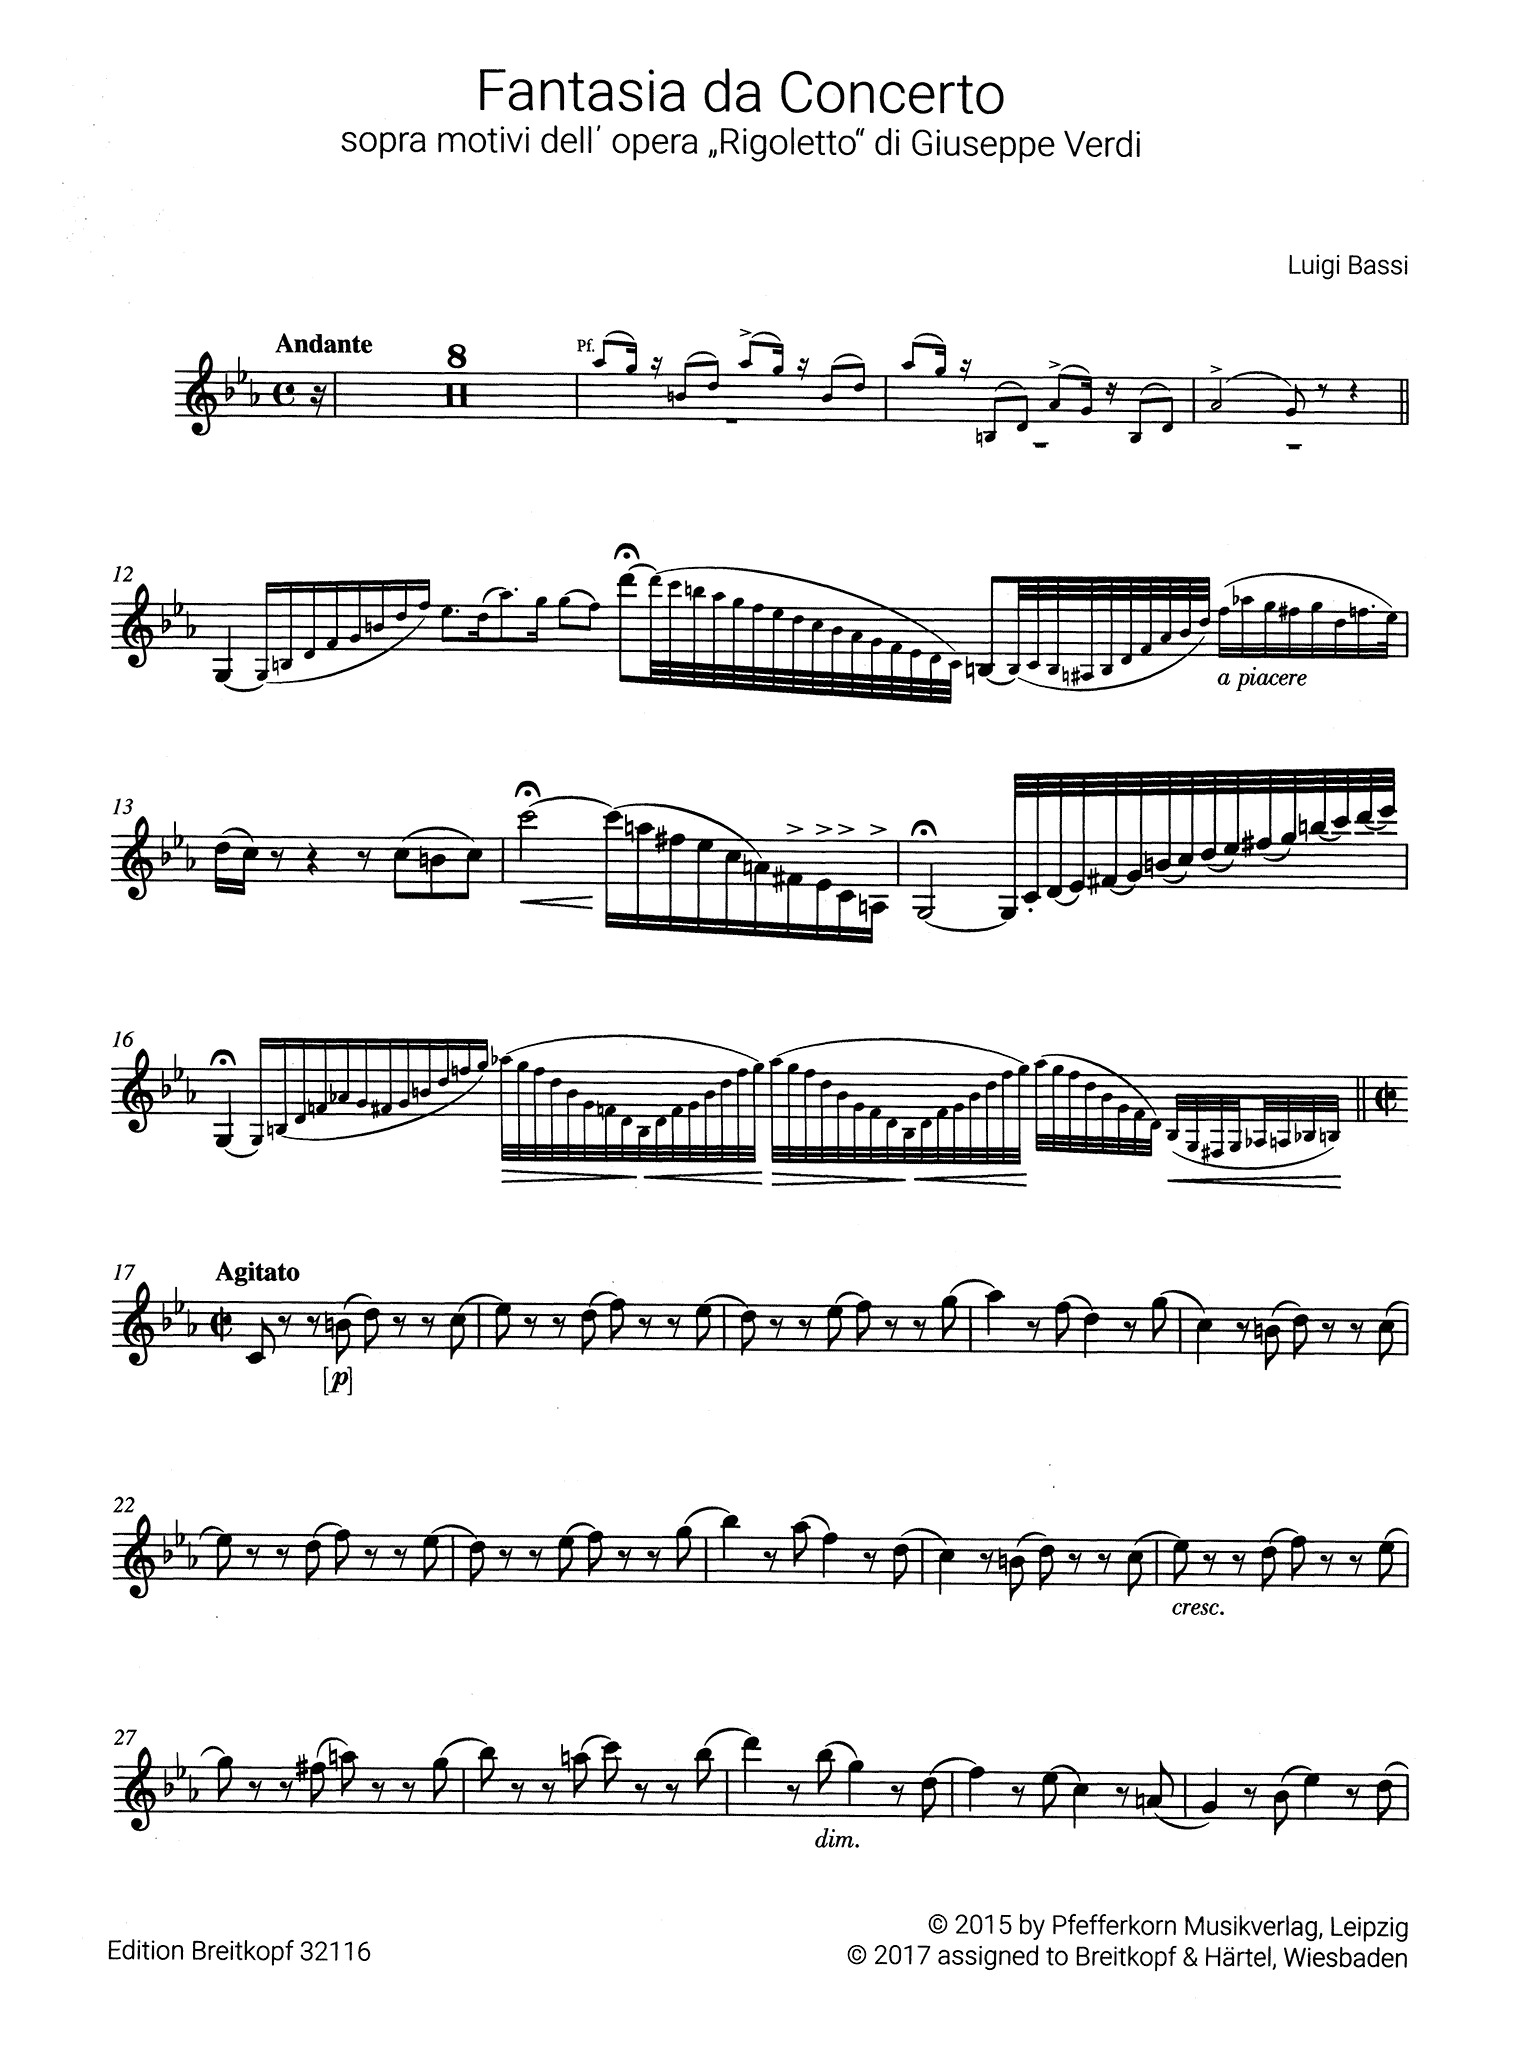 Bassi Concert Fantasy Verdi Rigoletto Clarinet part